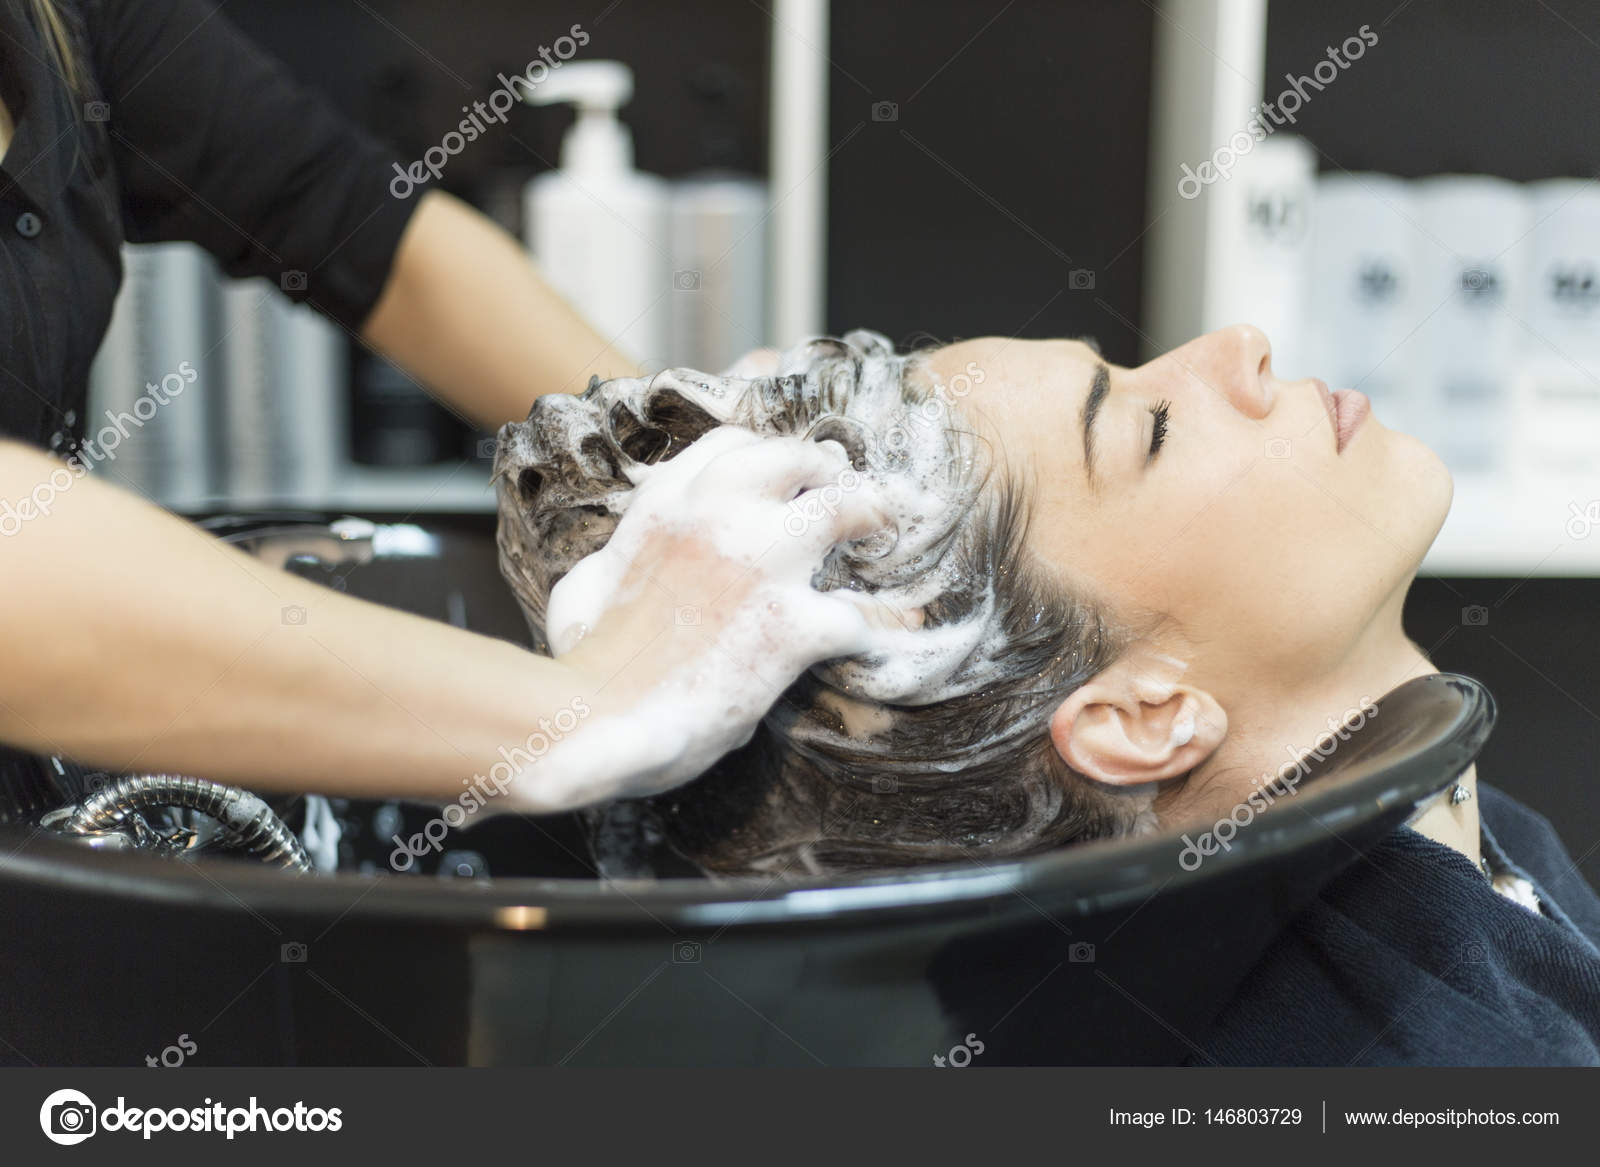 Стрижка мытье головы. Мытье головы. Мытье волос в парикмахерской. Мытье головы в салоне красоты. Мытьё головы в парикмахерской.